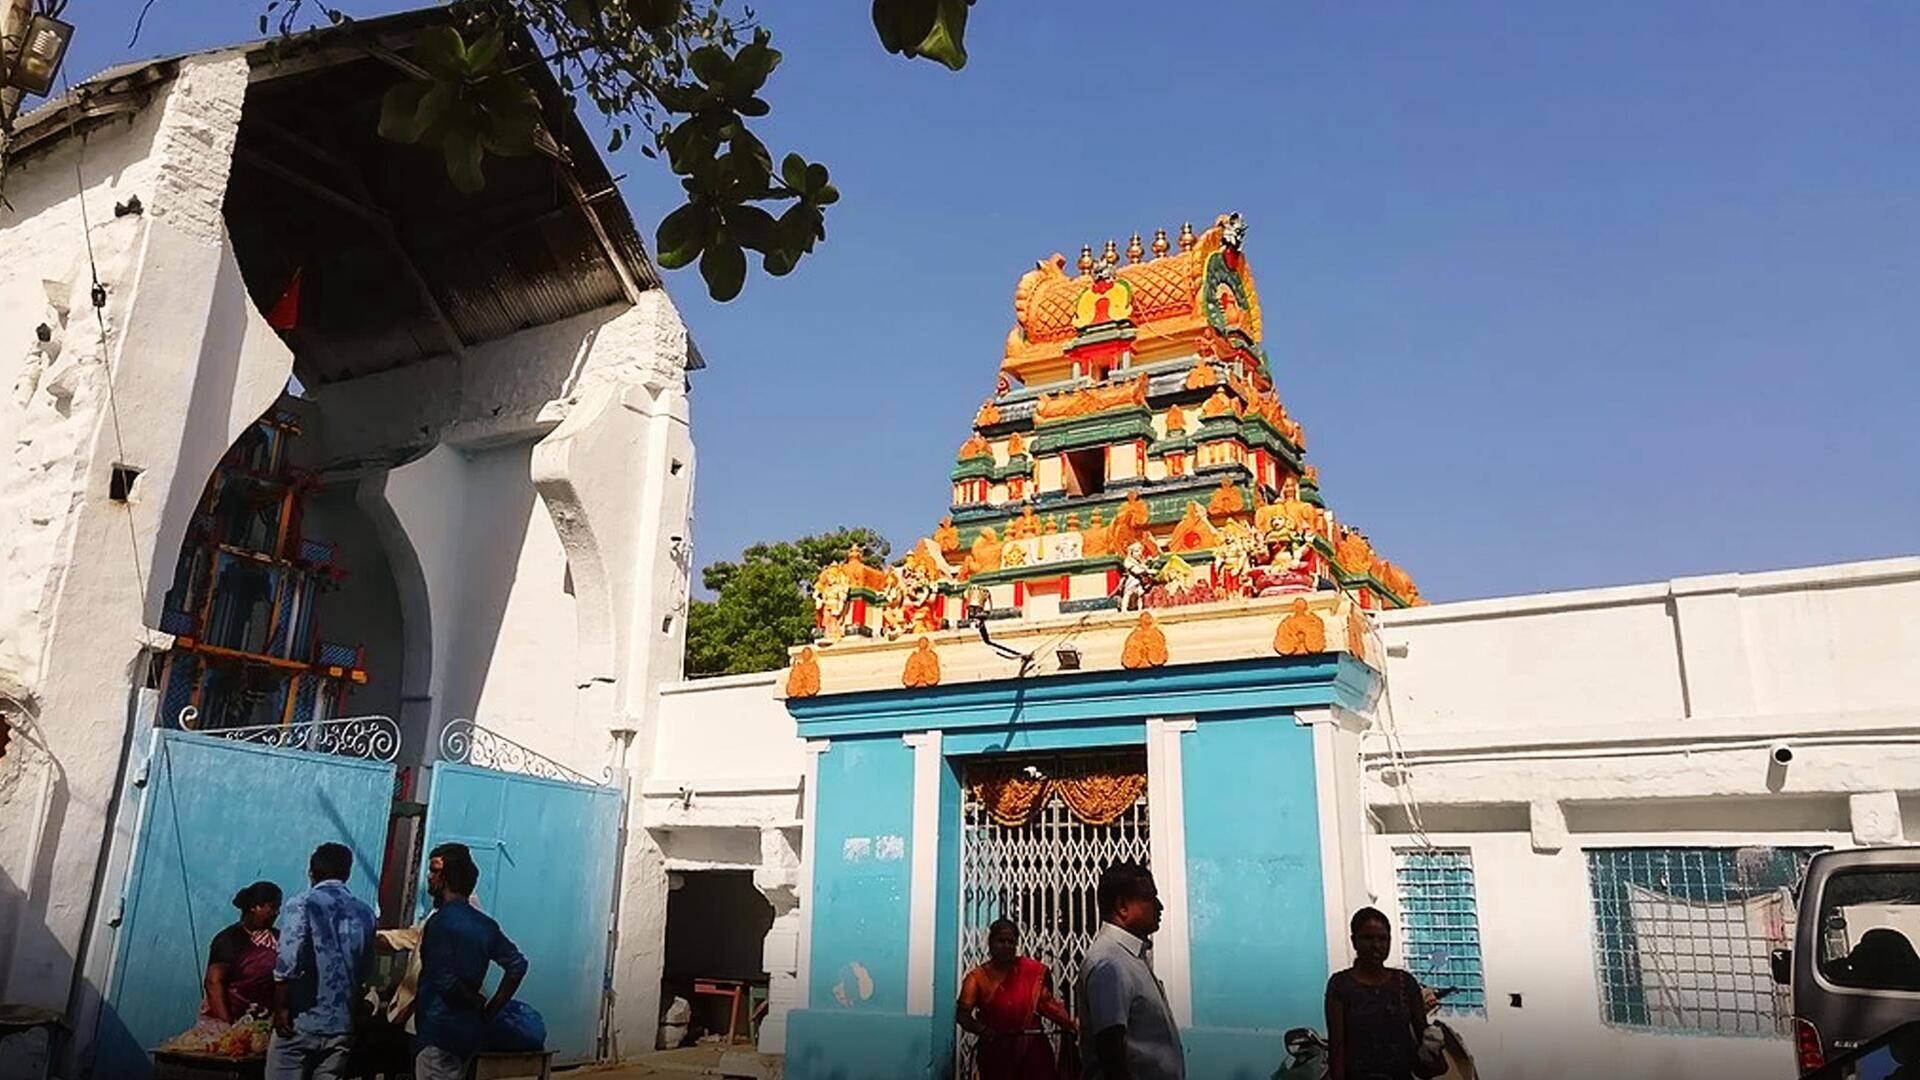 हैदराबाद के मंदिर में लाखों लोग लगाते हैं वीजा की अर्जी, कई की मनोकामना हुई पूरी